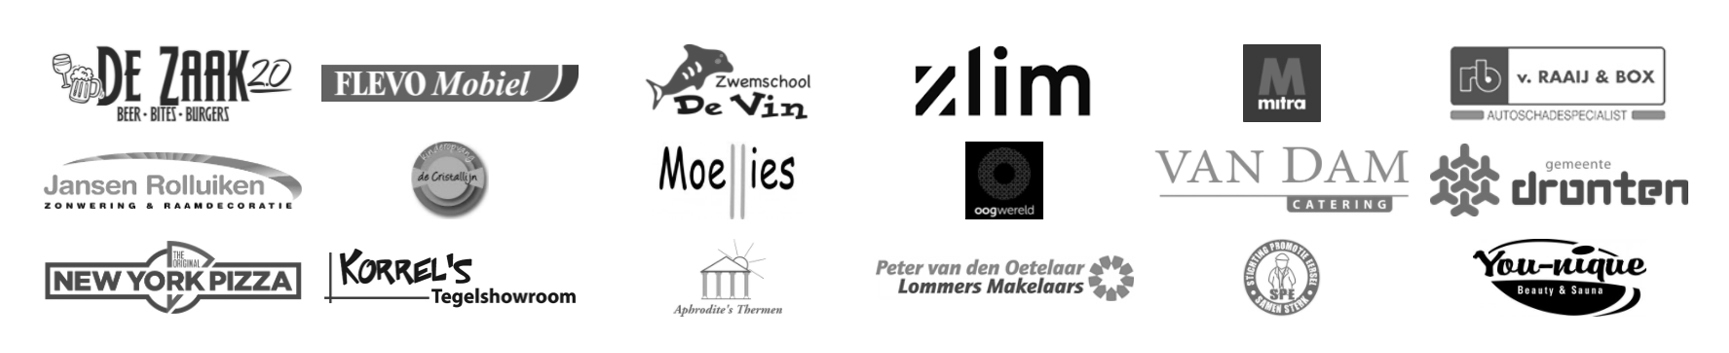 Een aantal logo's op een witte achtergrond inclusief zlim